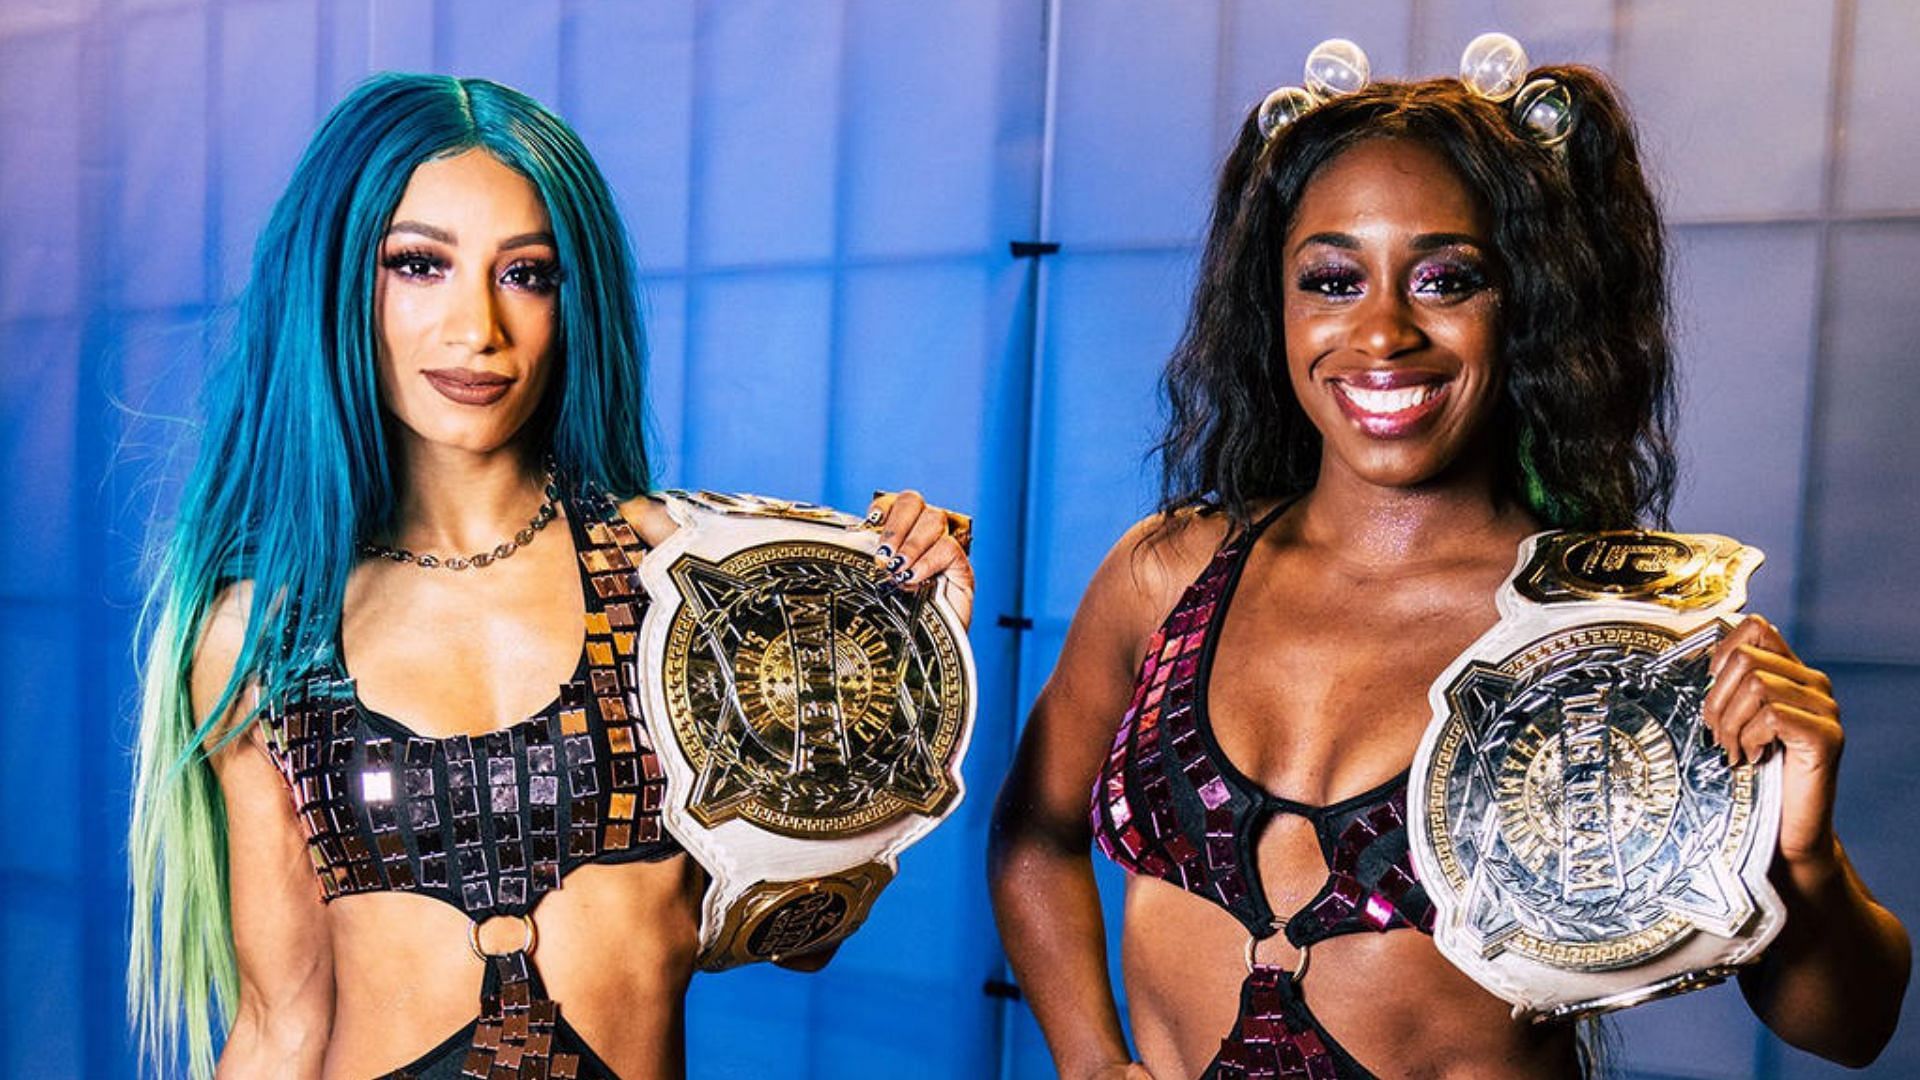 Sasha Banks and Naomi are former WWE Women